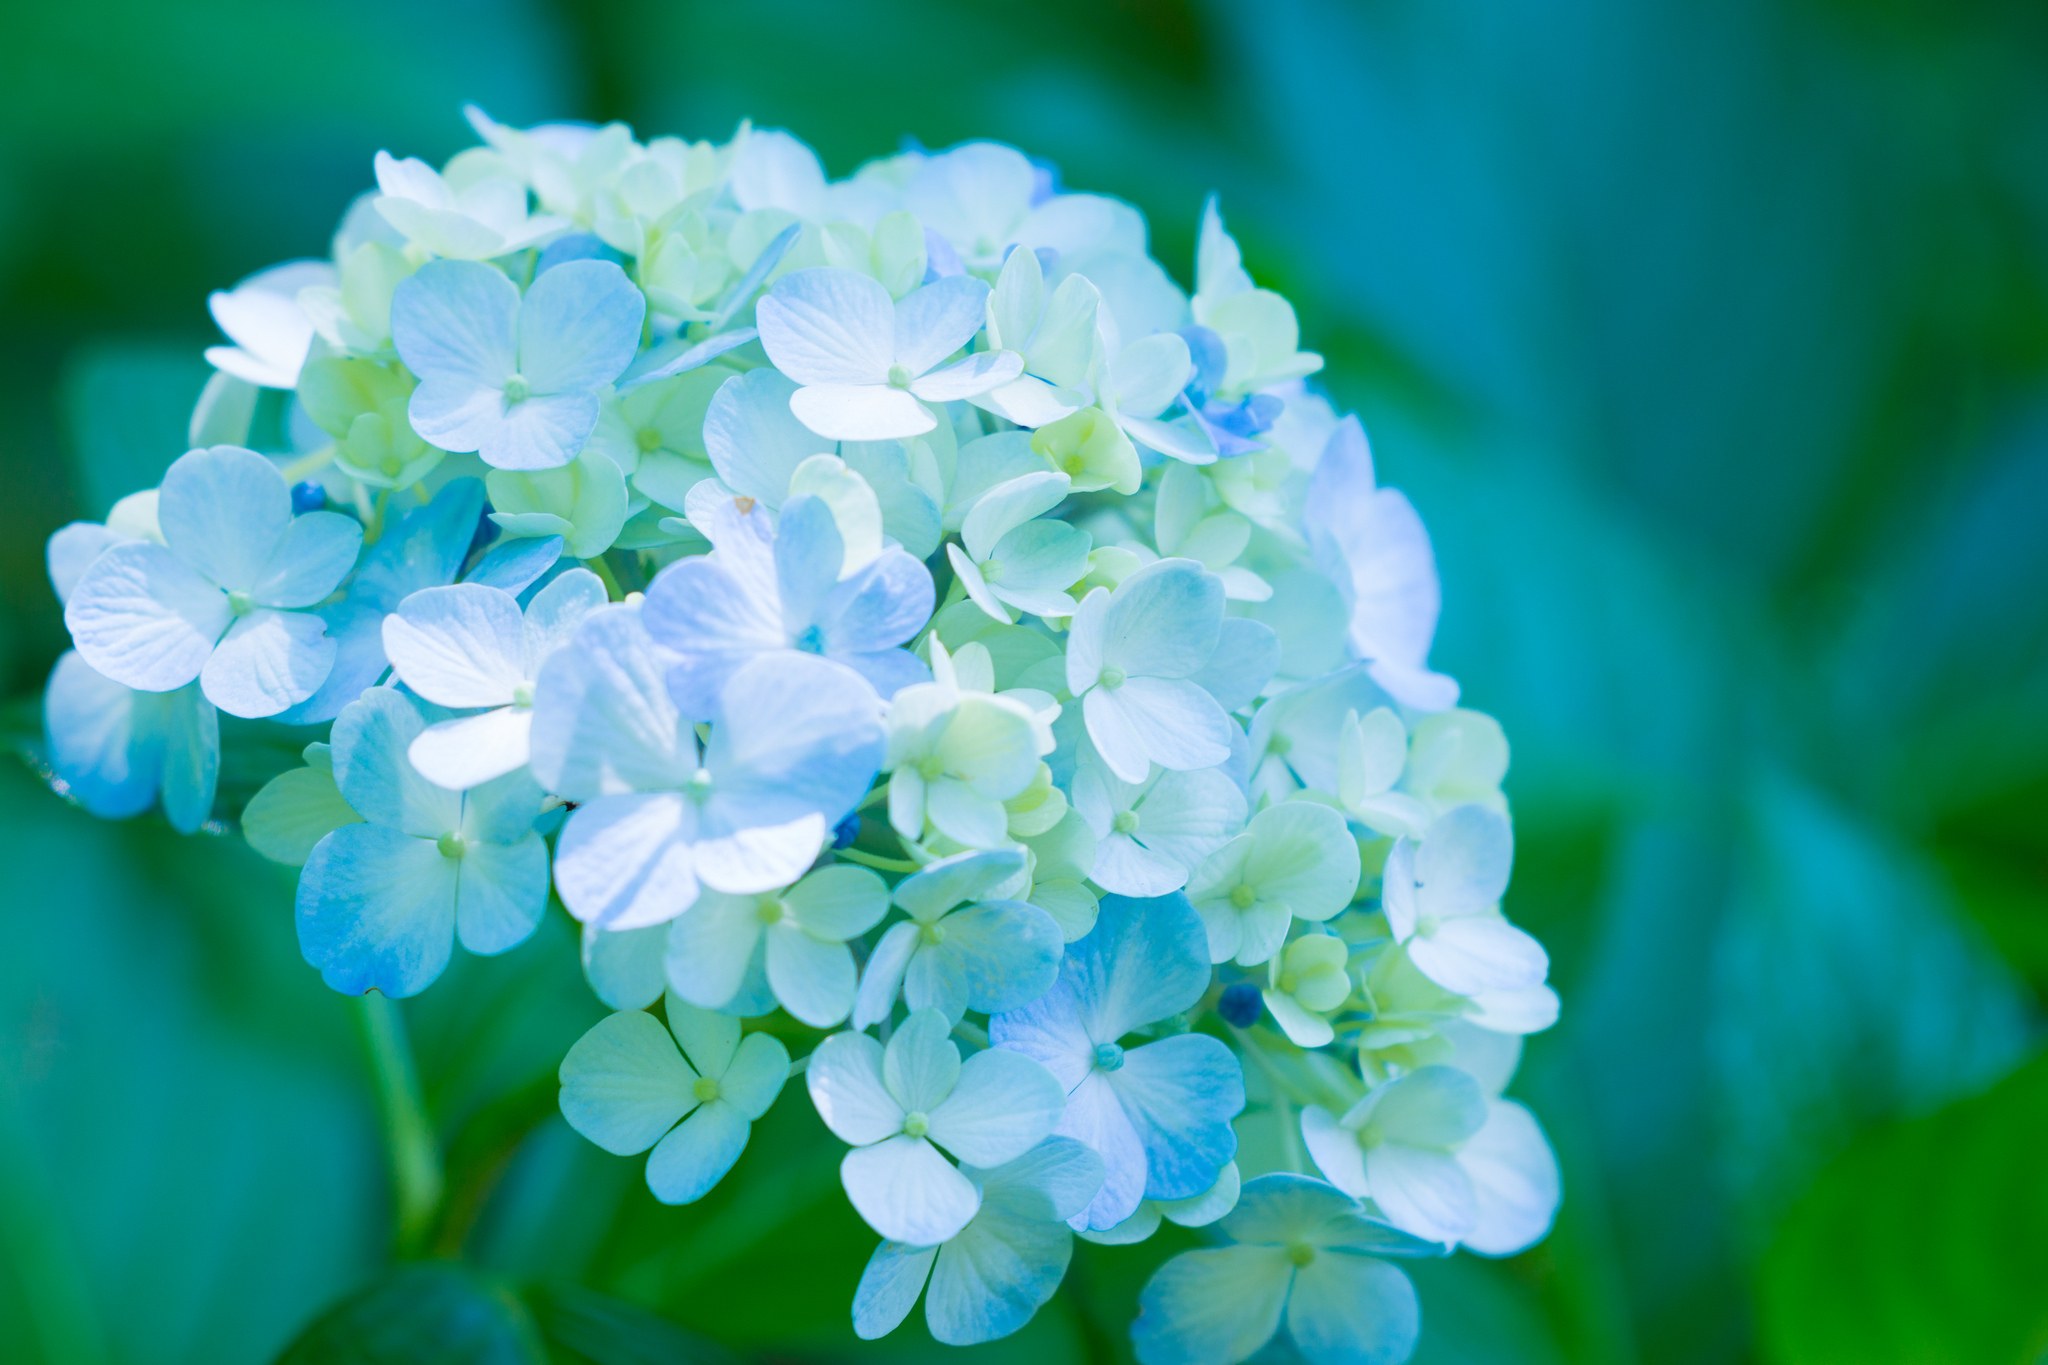 Hoa cẩm tú cầu là một trong những loài hoa đẹp nhất mùa hè. Với màu sắc tươi sáng và hình dáng độc đáo, chúng là điểm nhấn tuyệt vời cho bất kỳ khu vườn nào. Hãy đón xem hình ảnh liên quan đến hoa cẩm tú cầu để khám phá thêm vẻ đẹp của chúng.